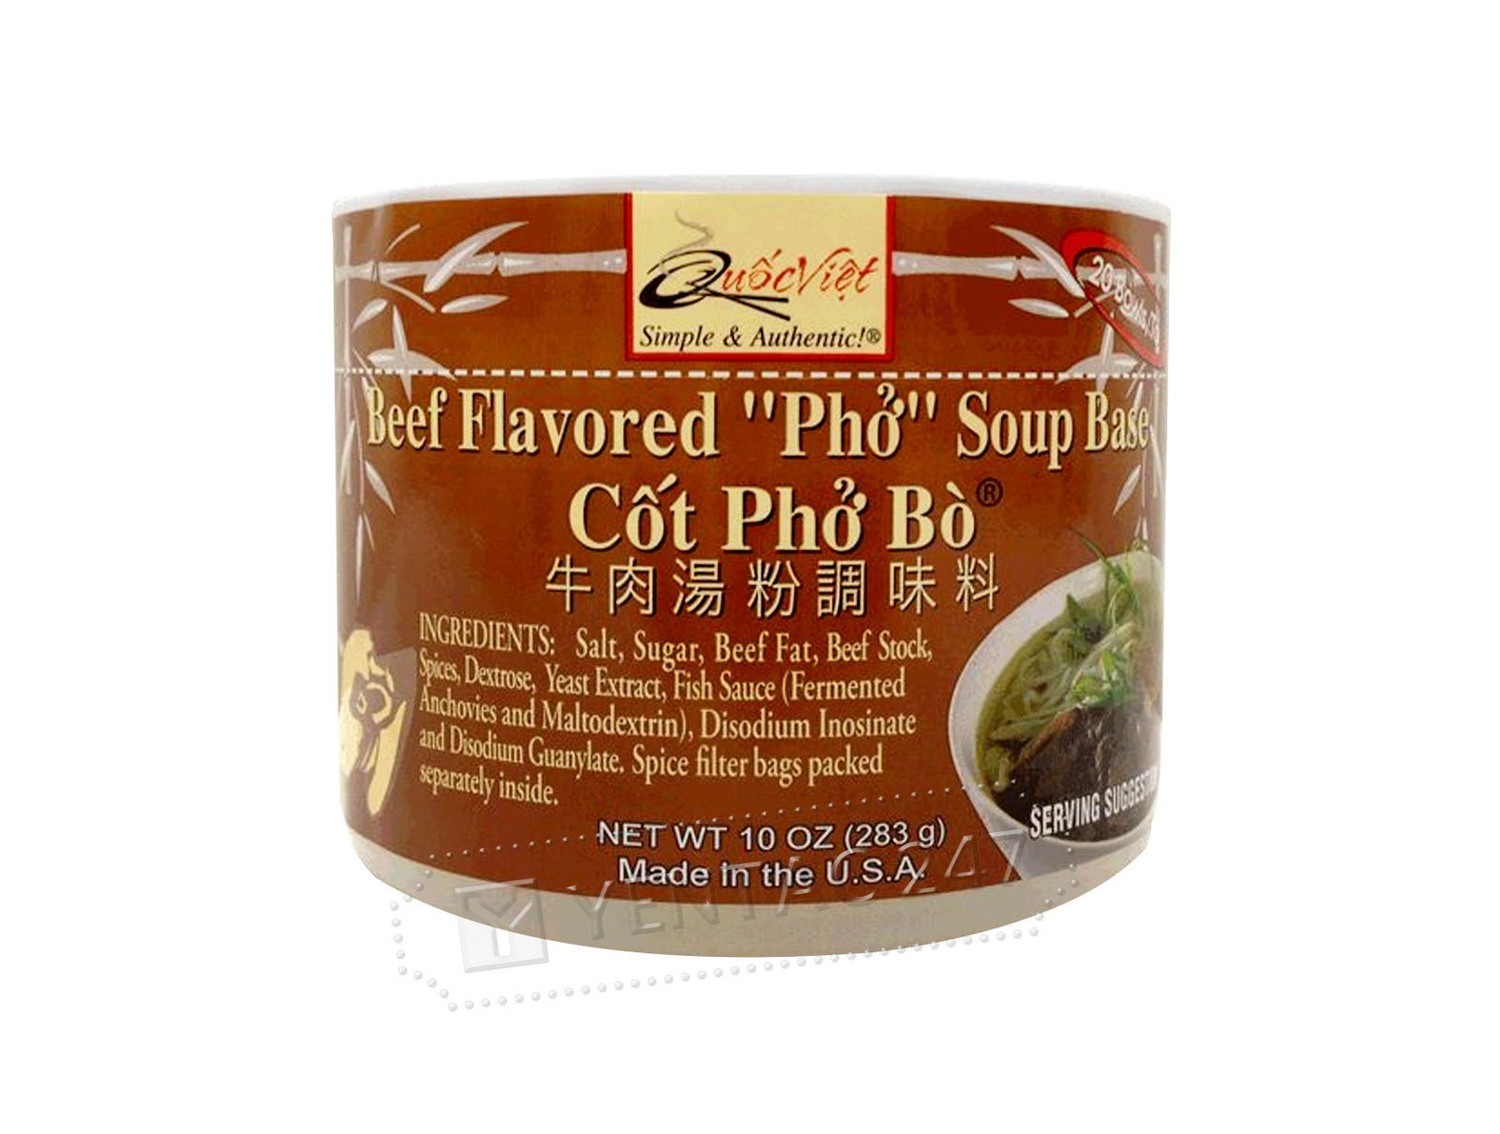 Cot Pho Bo